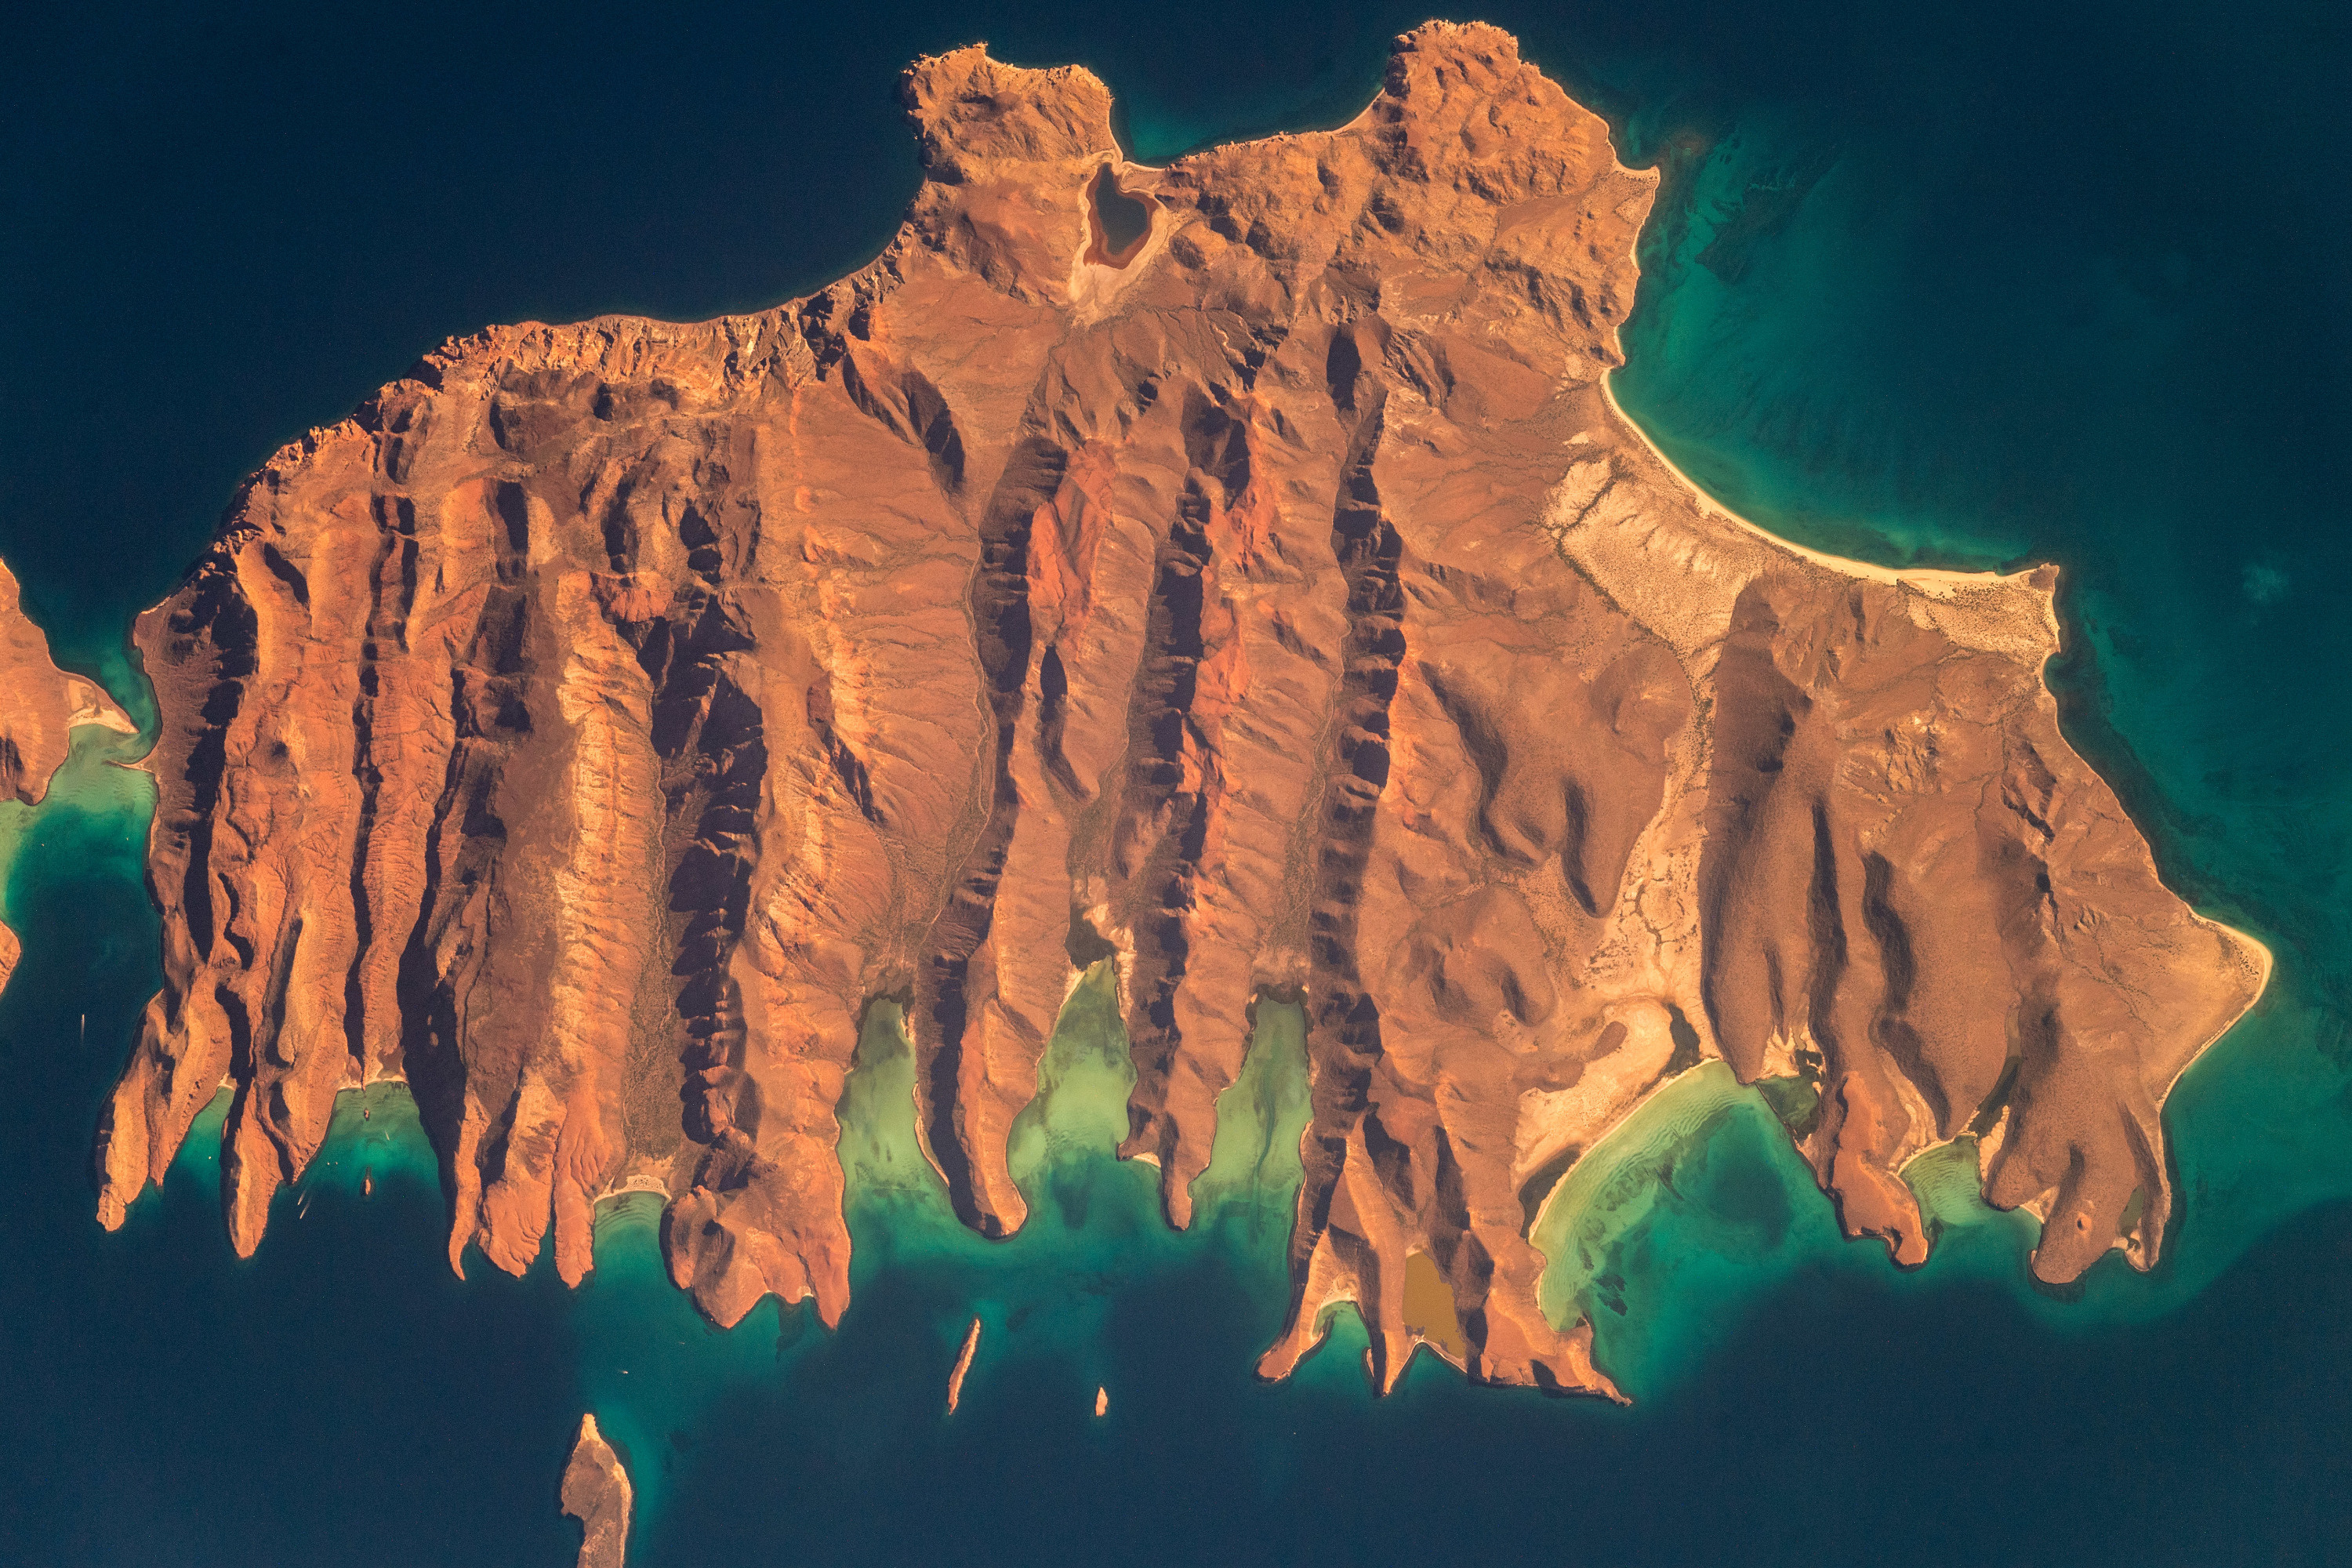 Это остров в Калифорнийском заливе в Мексике. «Остров похож на зубра, рядом есть еще один остров поменьше, напоминающий детеныша зубра. Вода вокруг острова изменяет свой цвет за счет микроорганизмов»